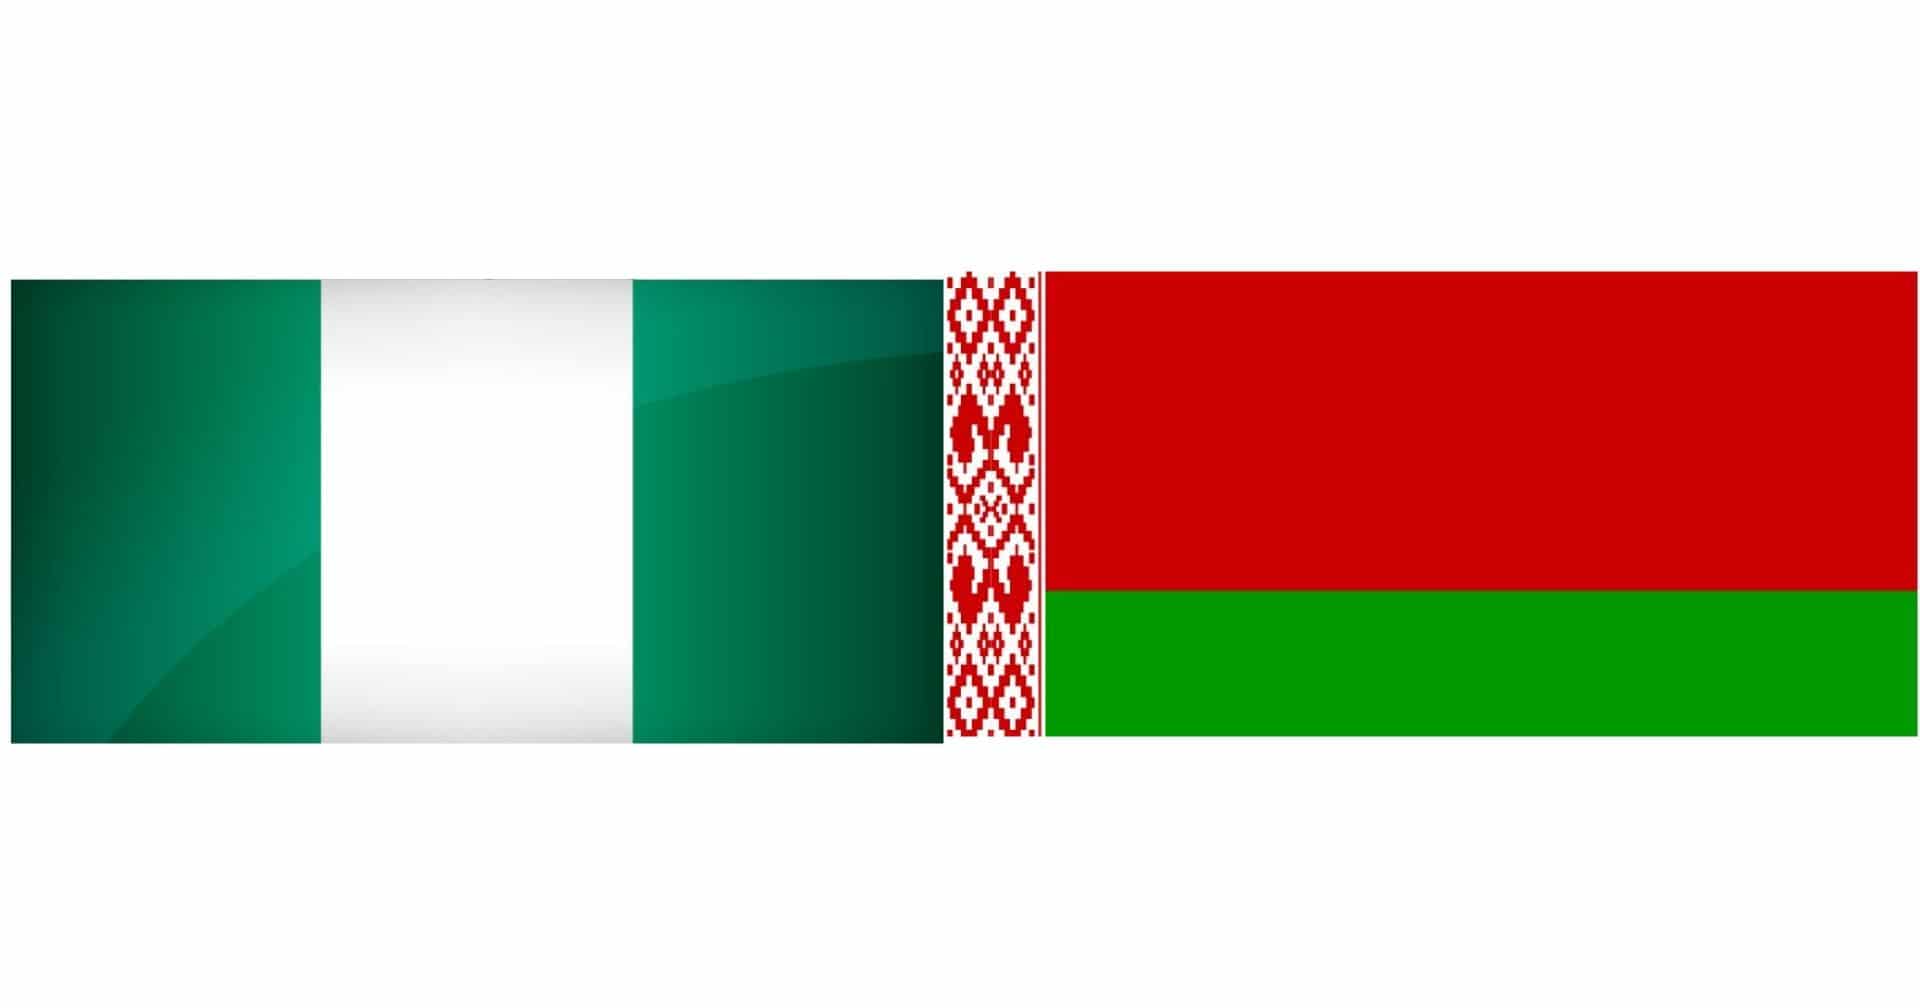 Nigeria-Belarus